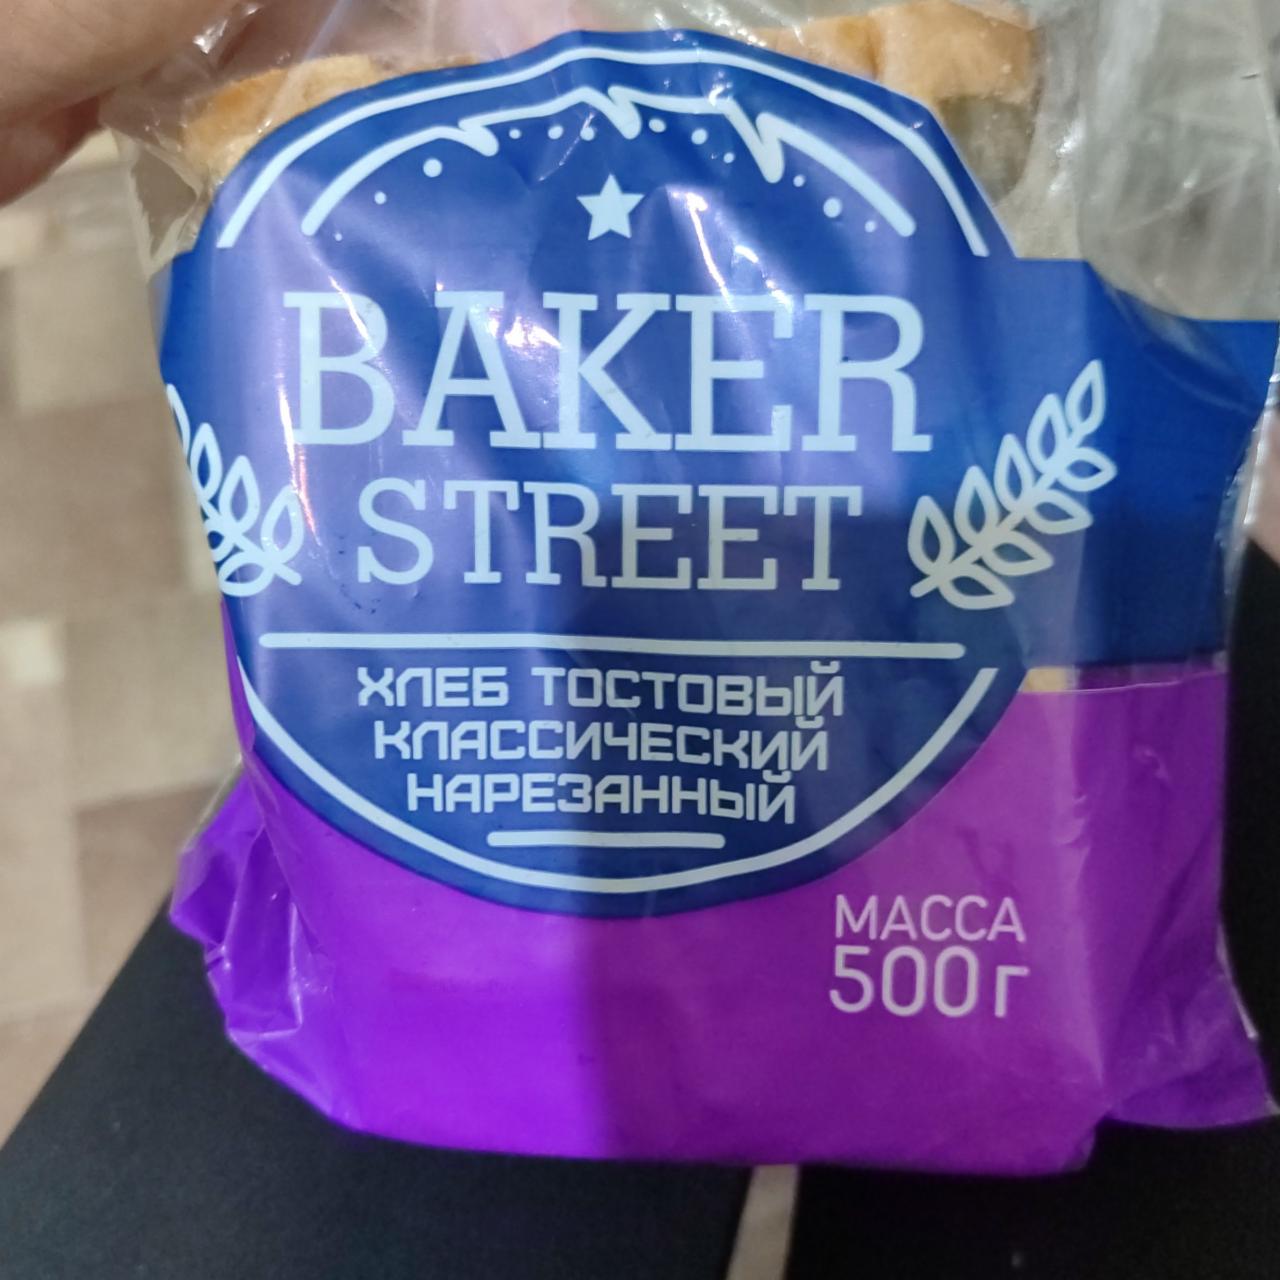 Фото - Хлеб тостовый классический XXL Baker Street